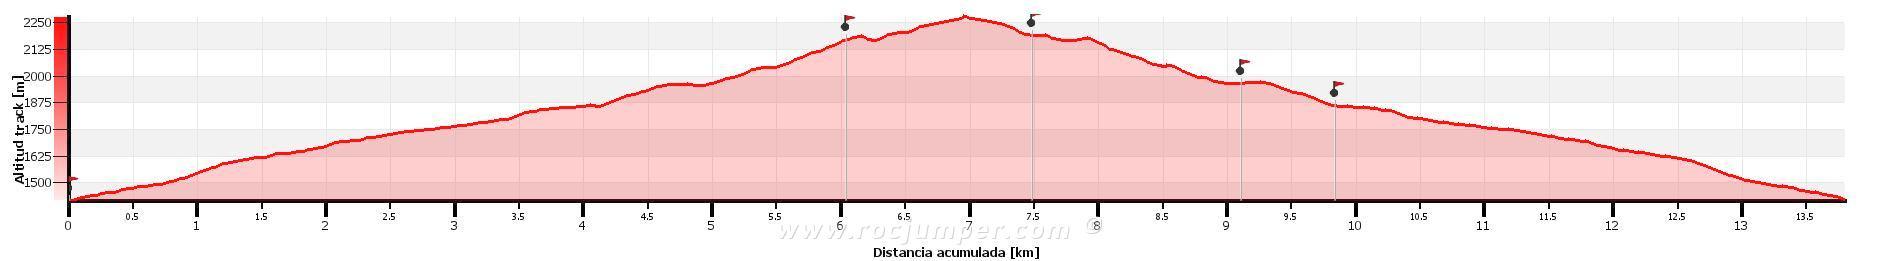 Altimetría - Estany Tapat - Vall Fosca - RocJumper